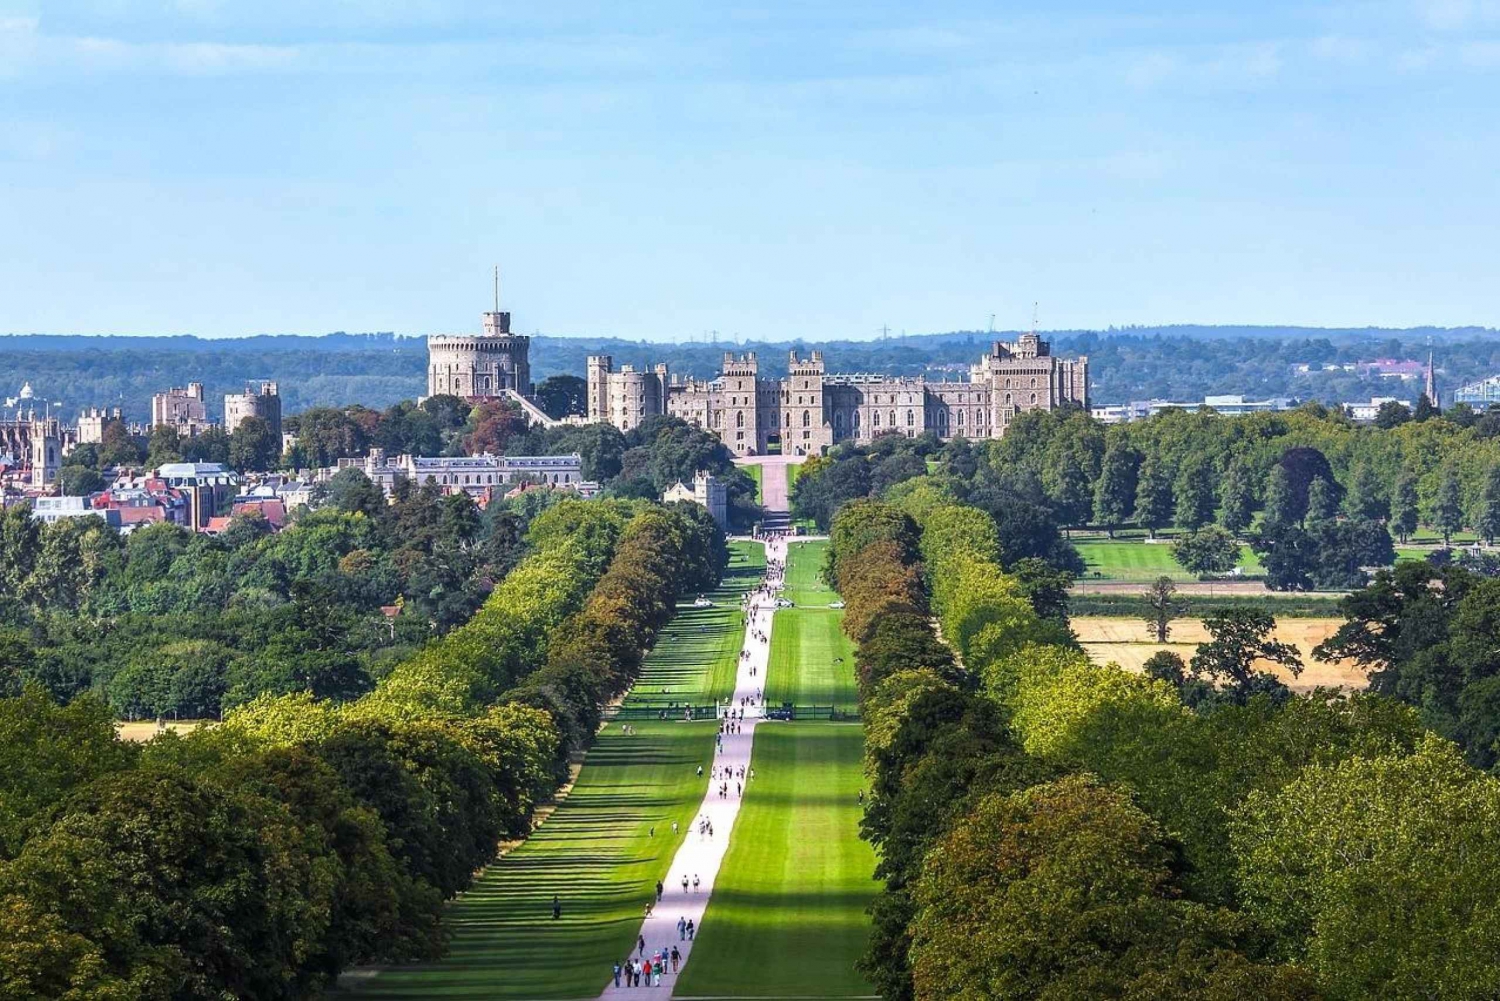 Londres : Merveilleuse visite de Westminster et du château de Windsor